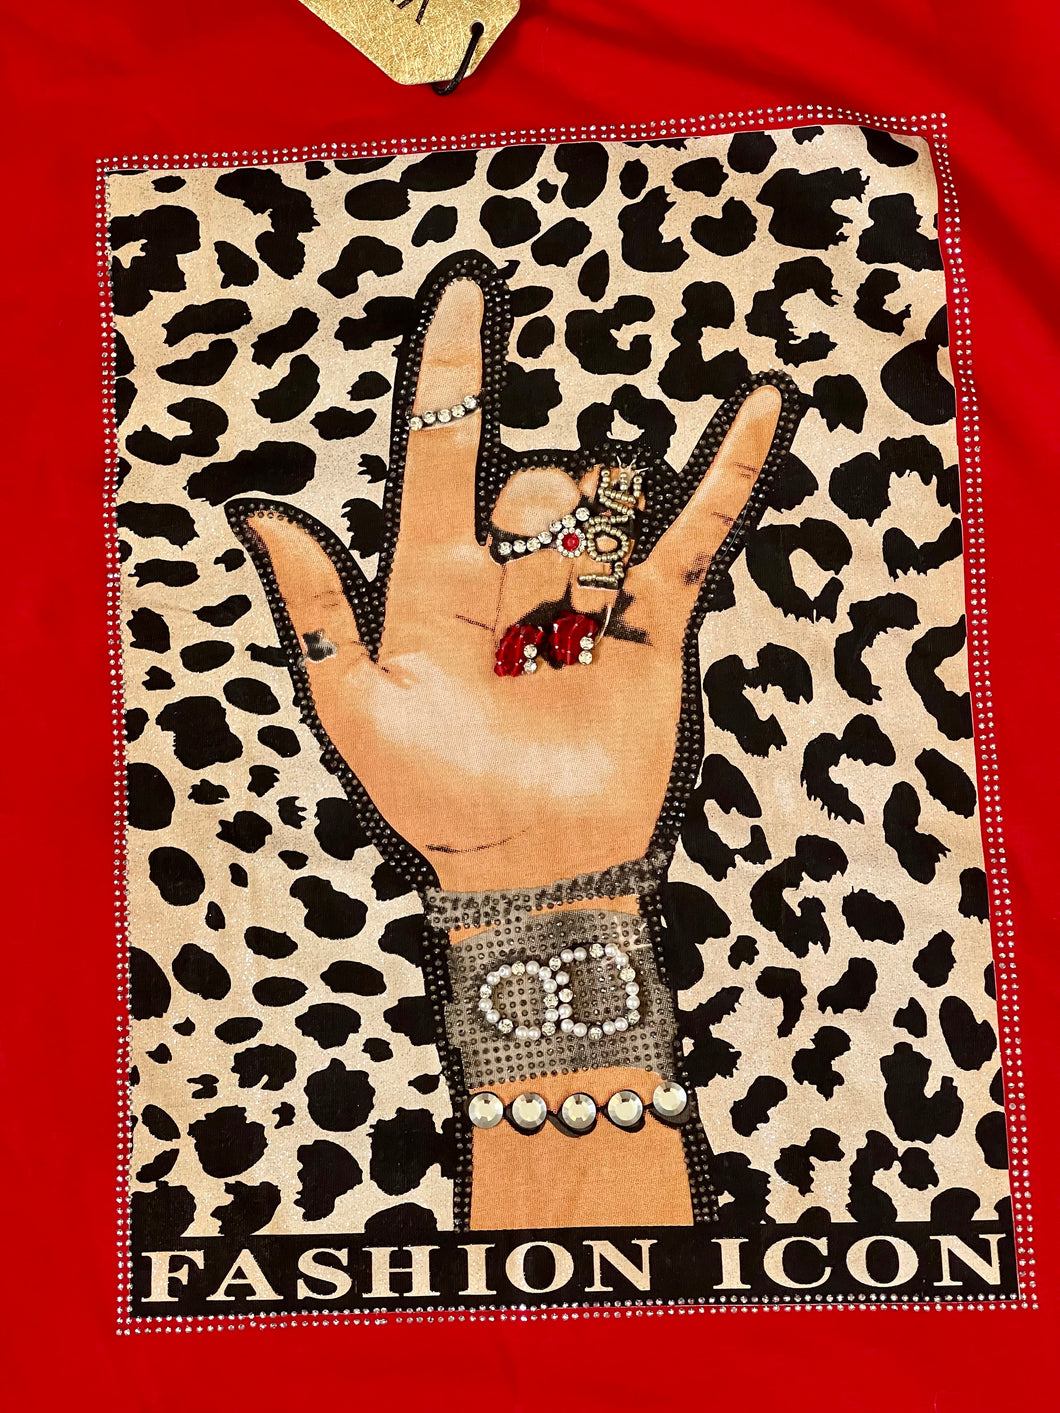 Rock Star Cheetah Print in red